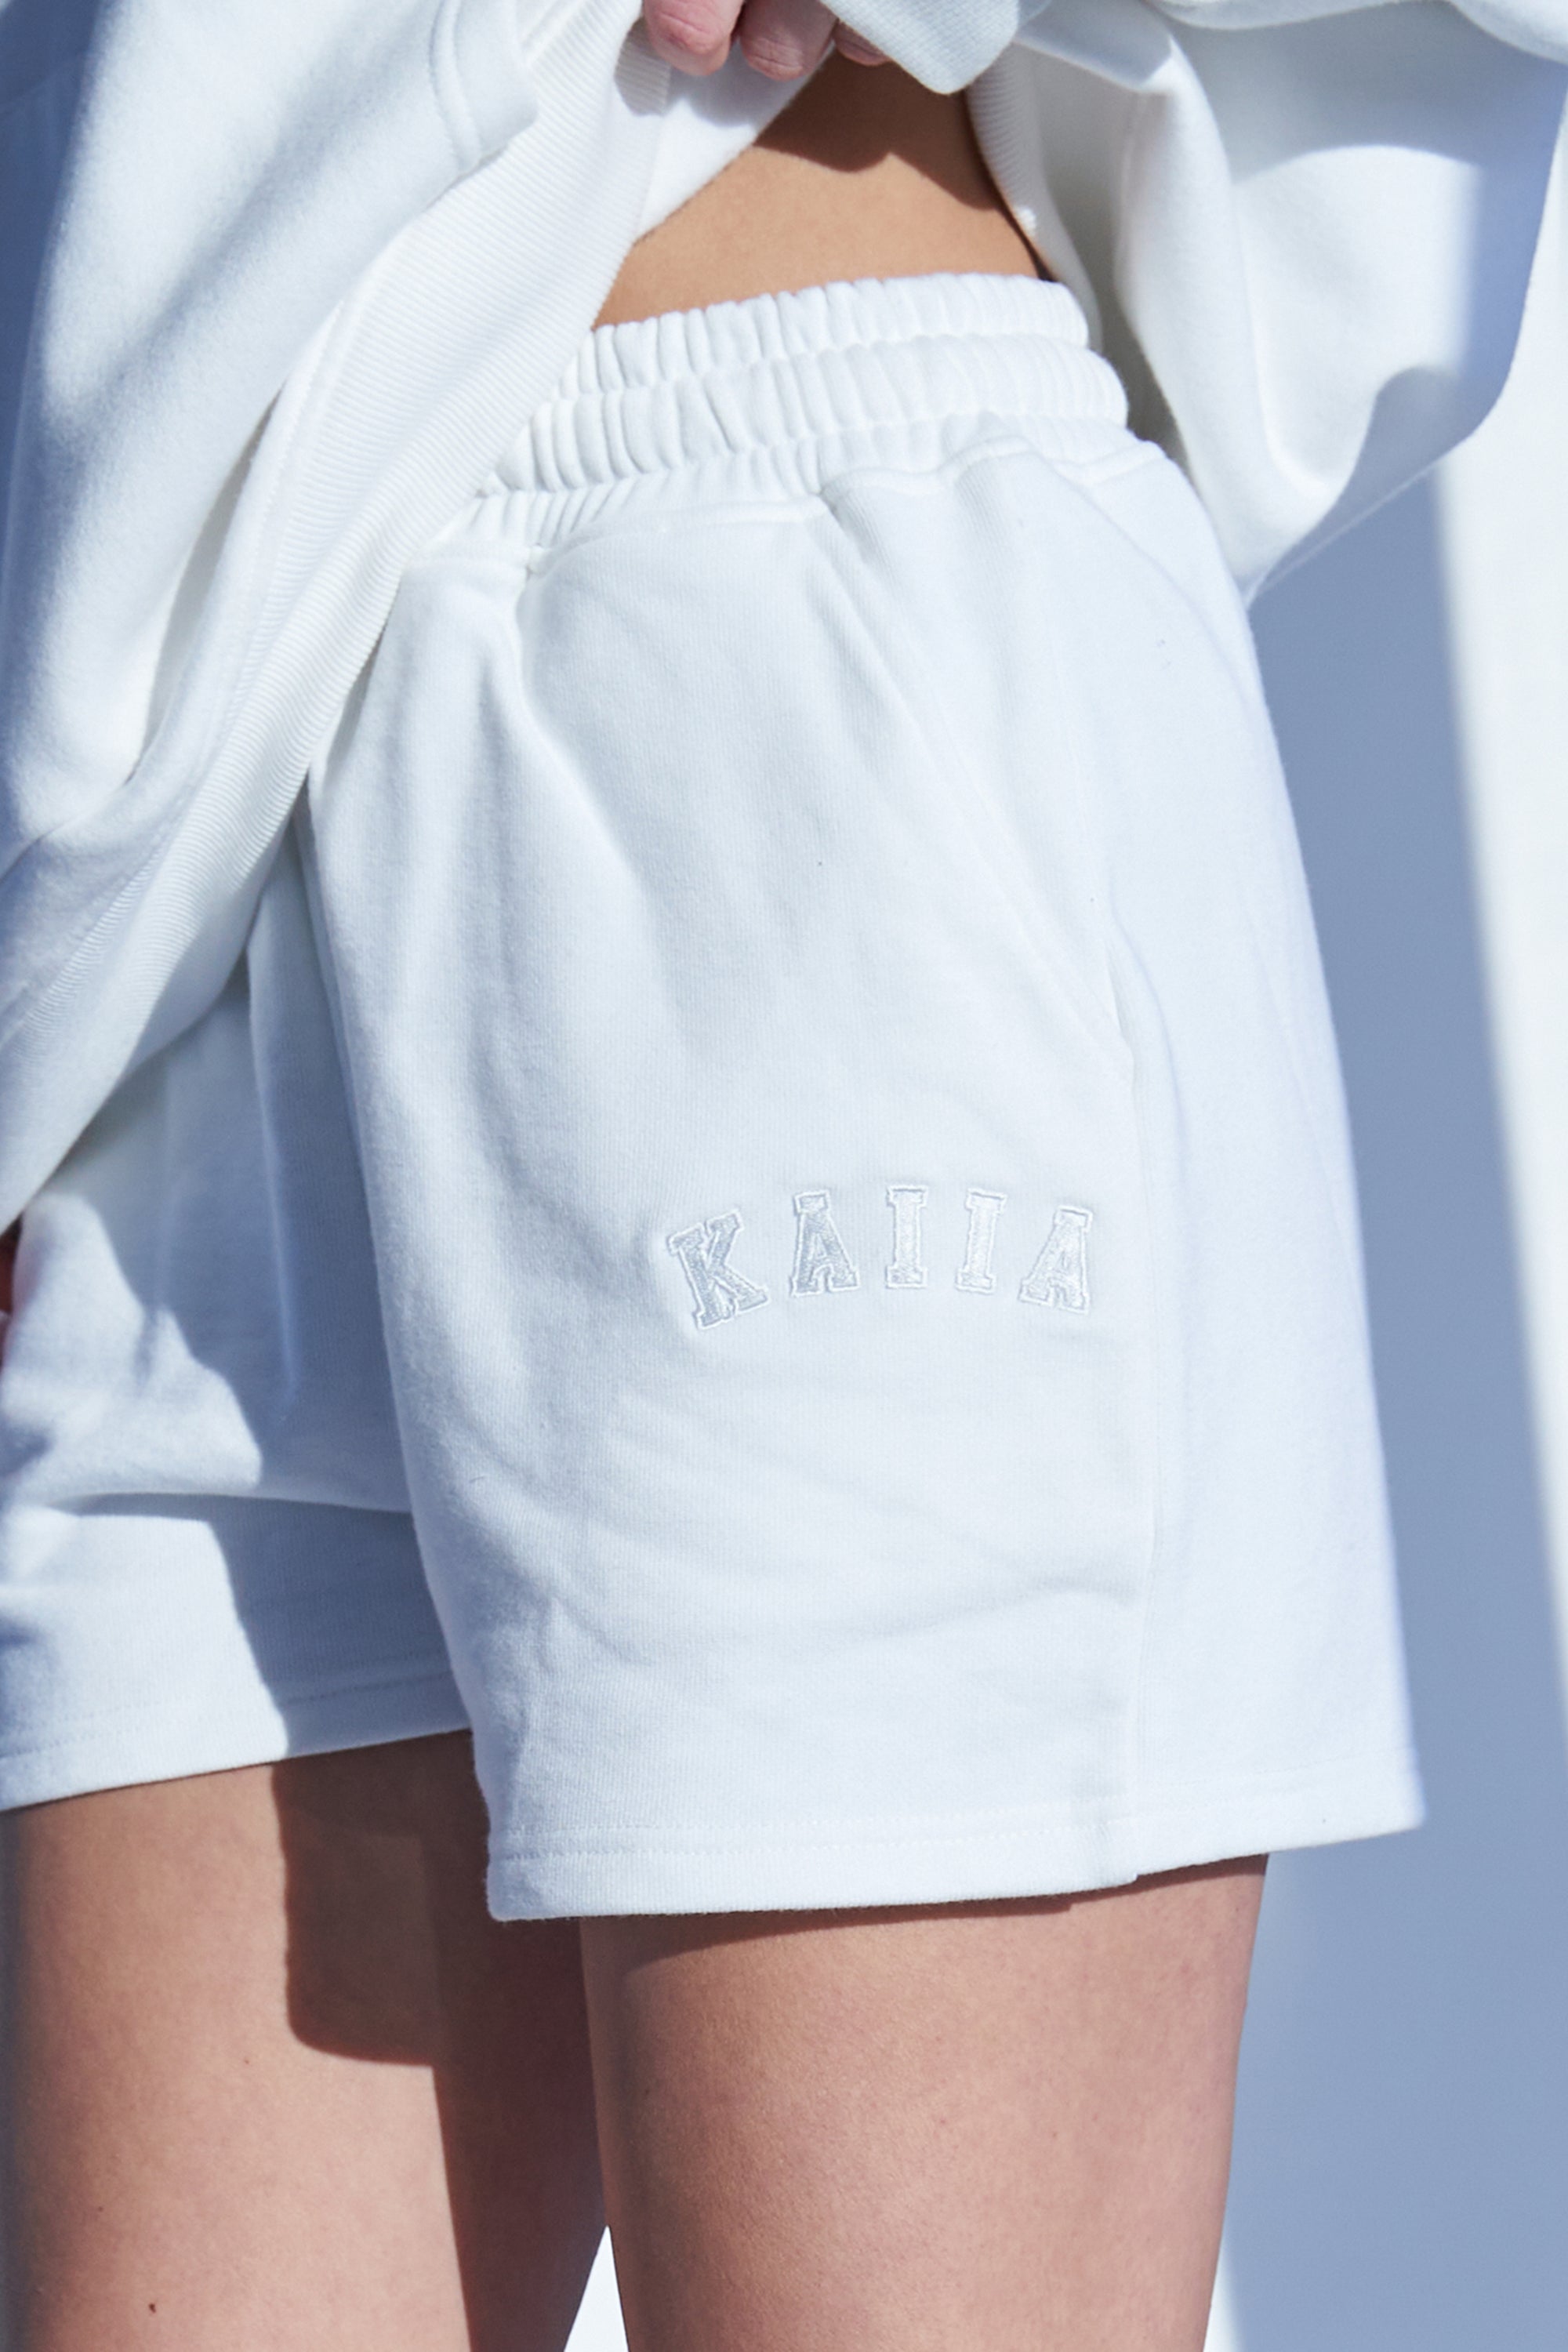 Kaiia Logo Sweat Shorts White